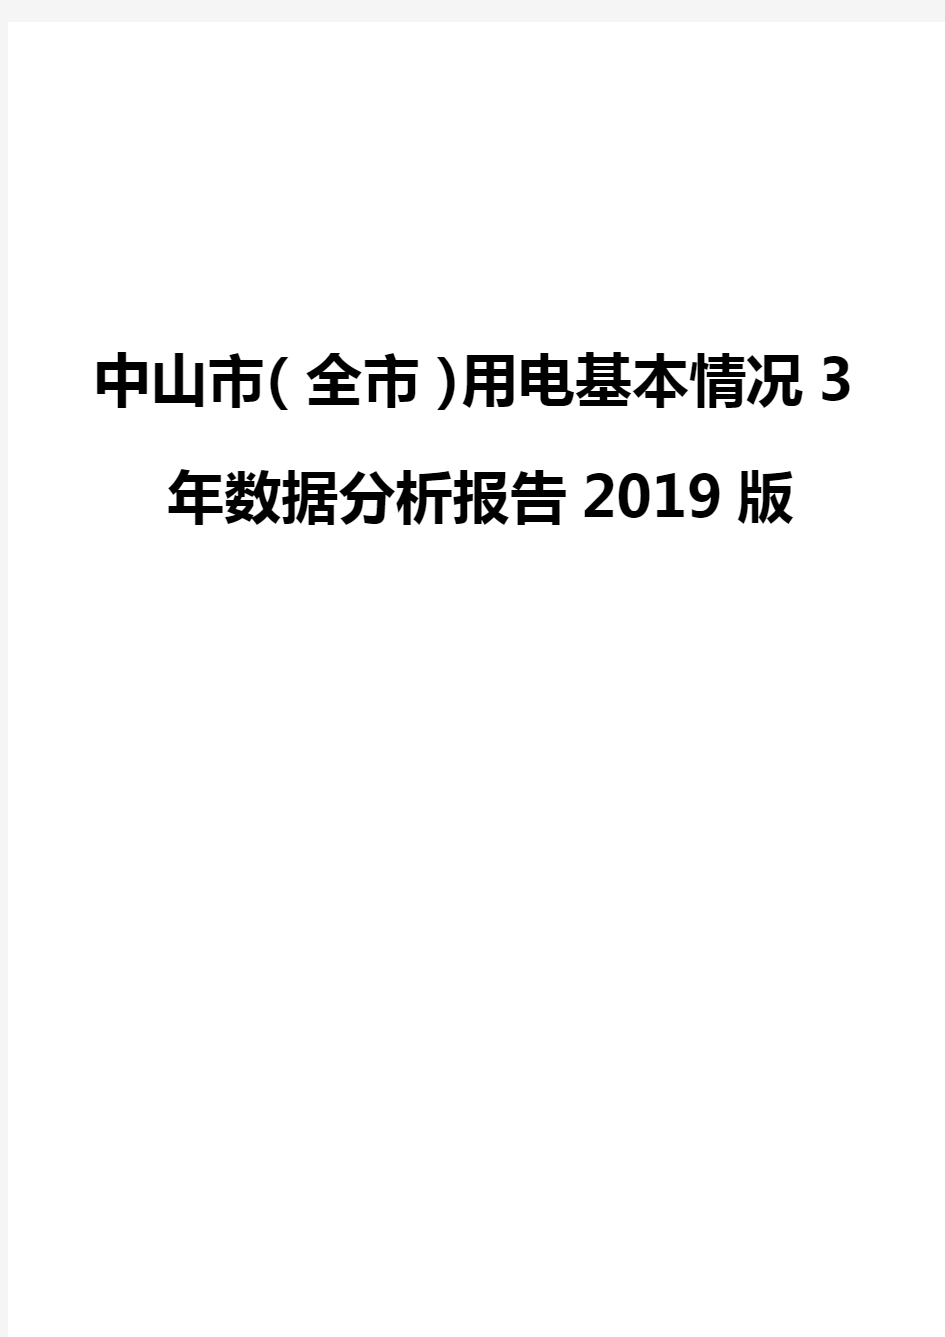 中山市(全市)用电基本情况3年数据分析报告2019版